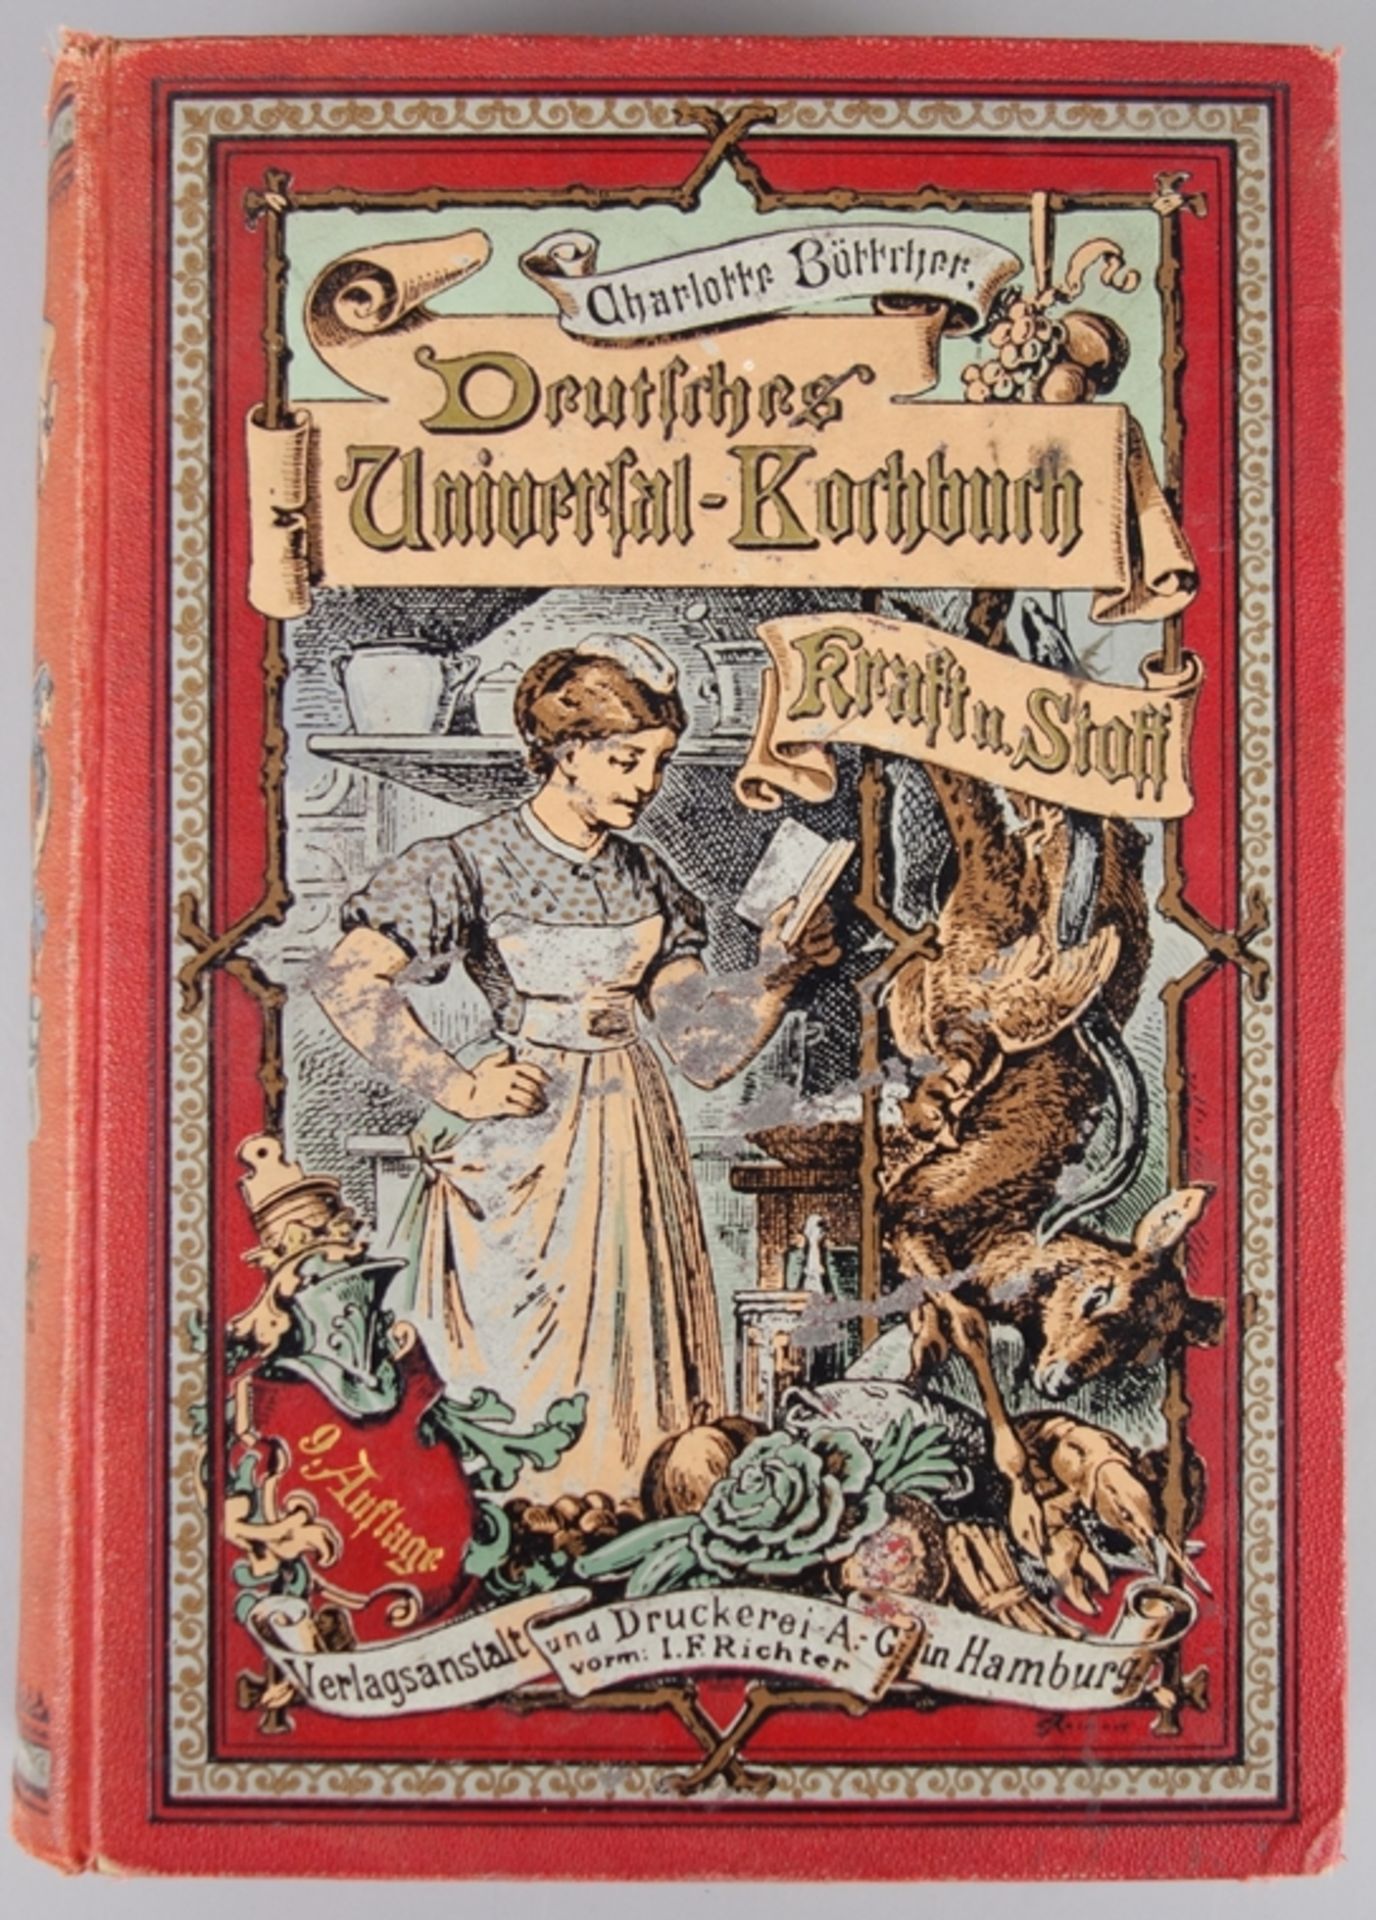 Kraft und Stoff - Deutsches Universal-Kochbuch, Charlotte Böttcher, 1888